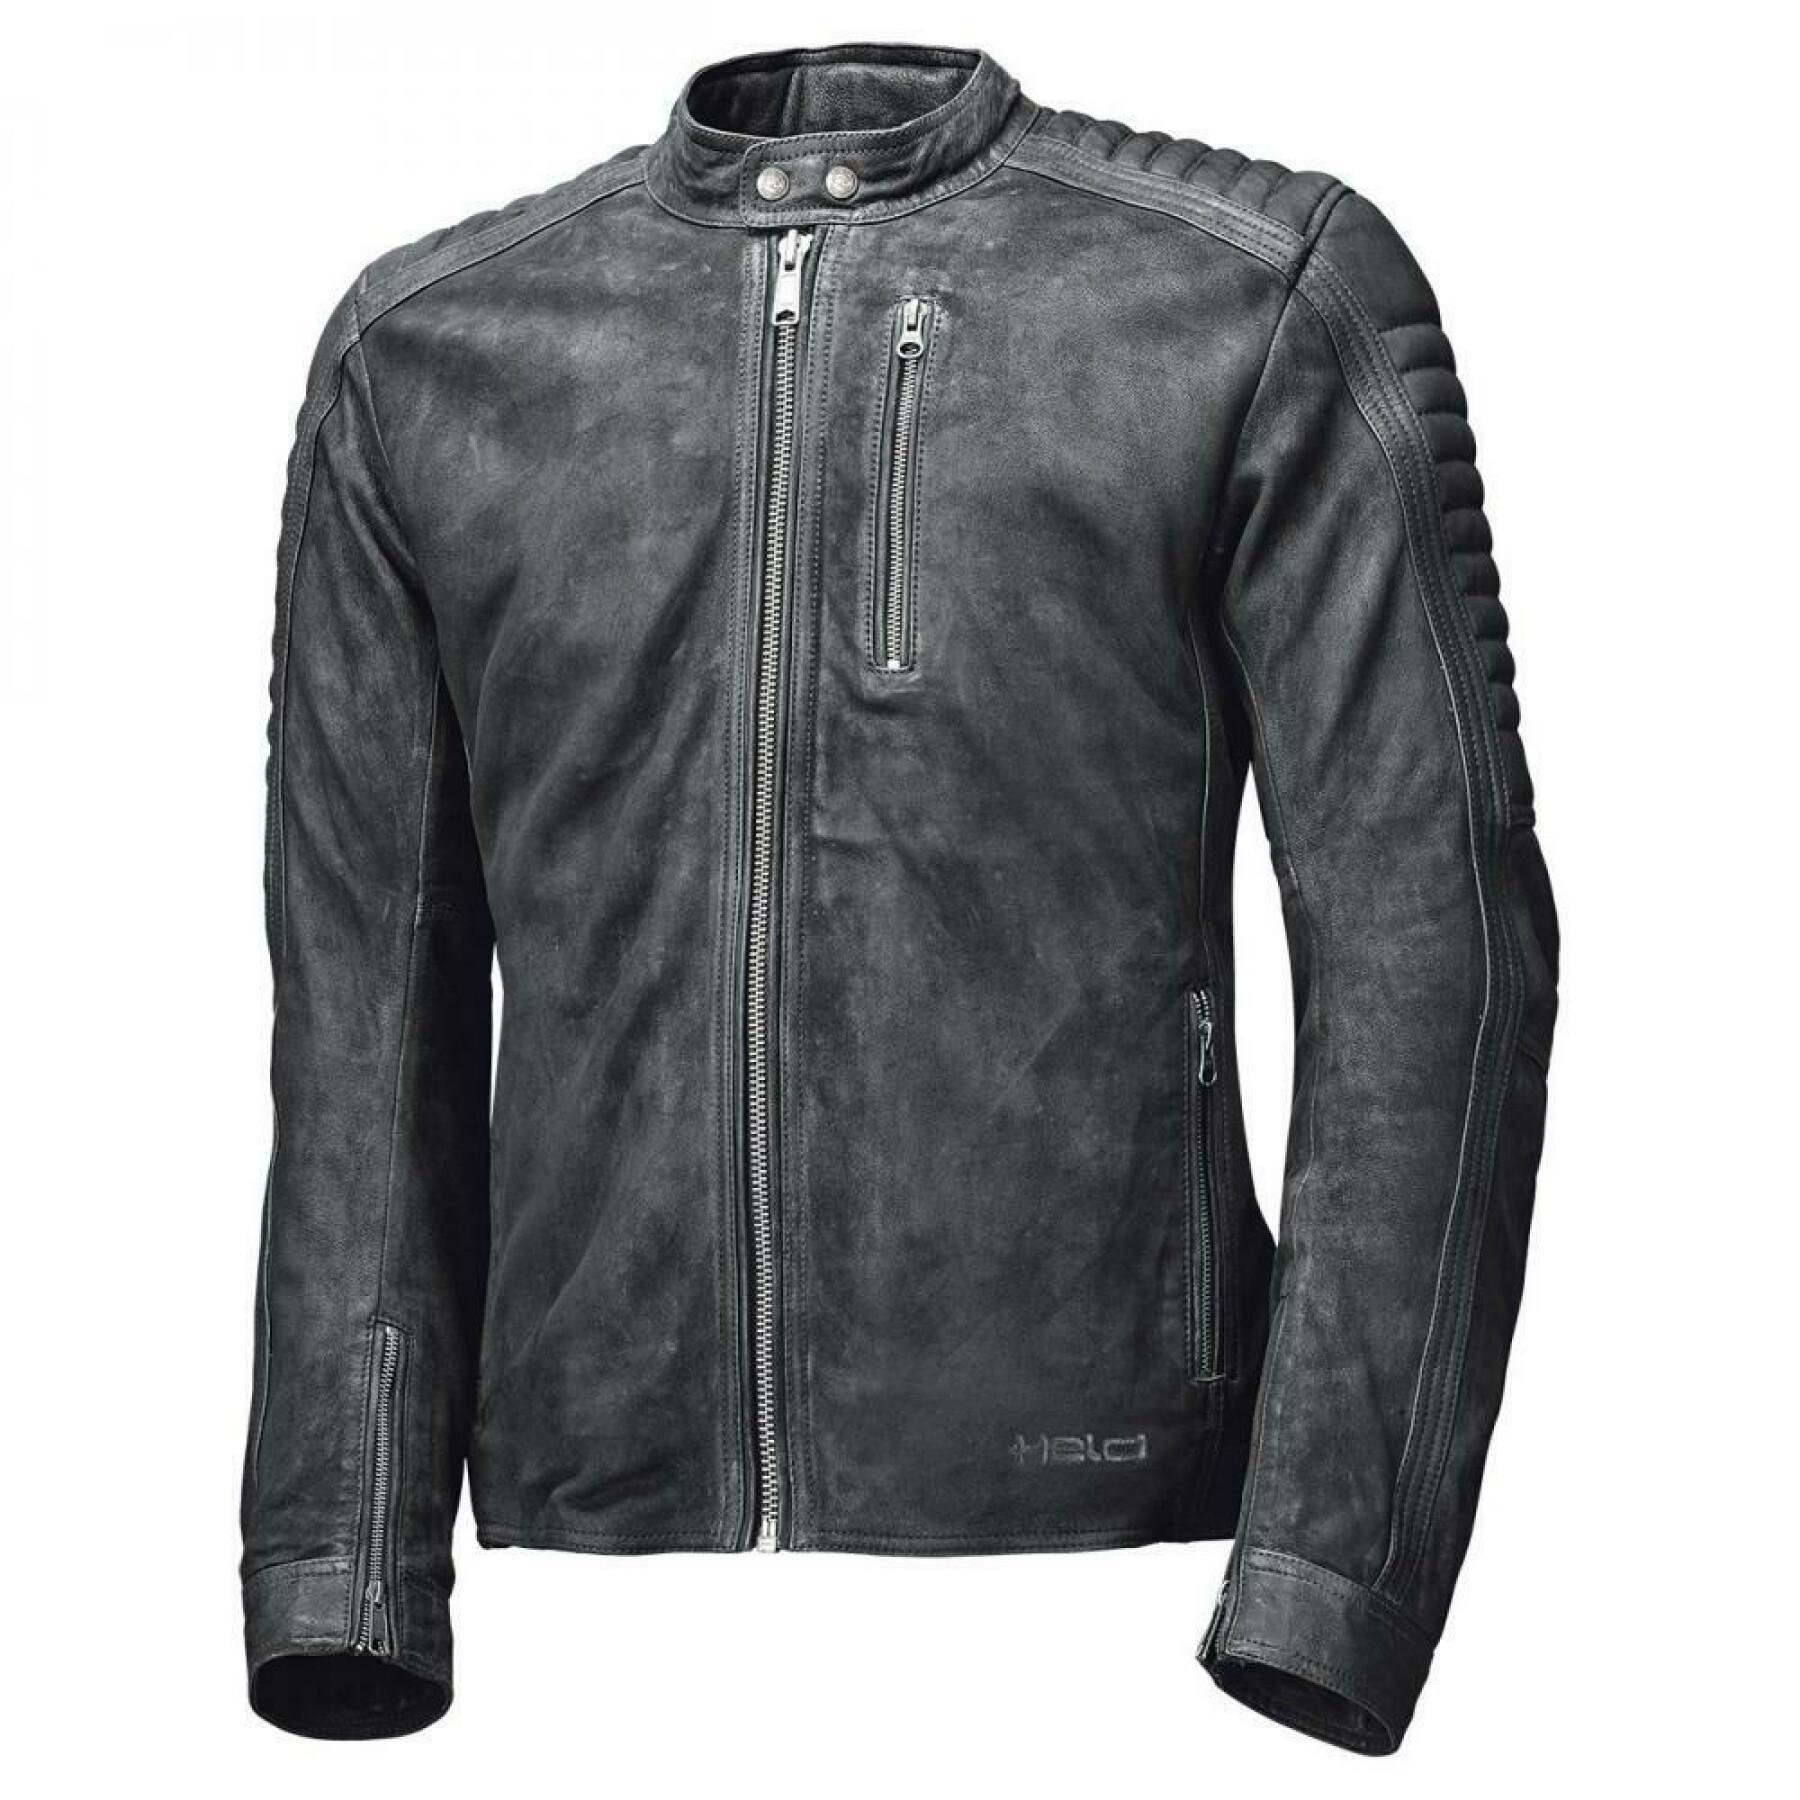 Motorcycle leather jacket Held Pako